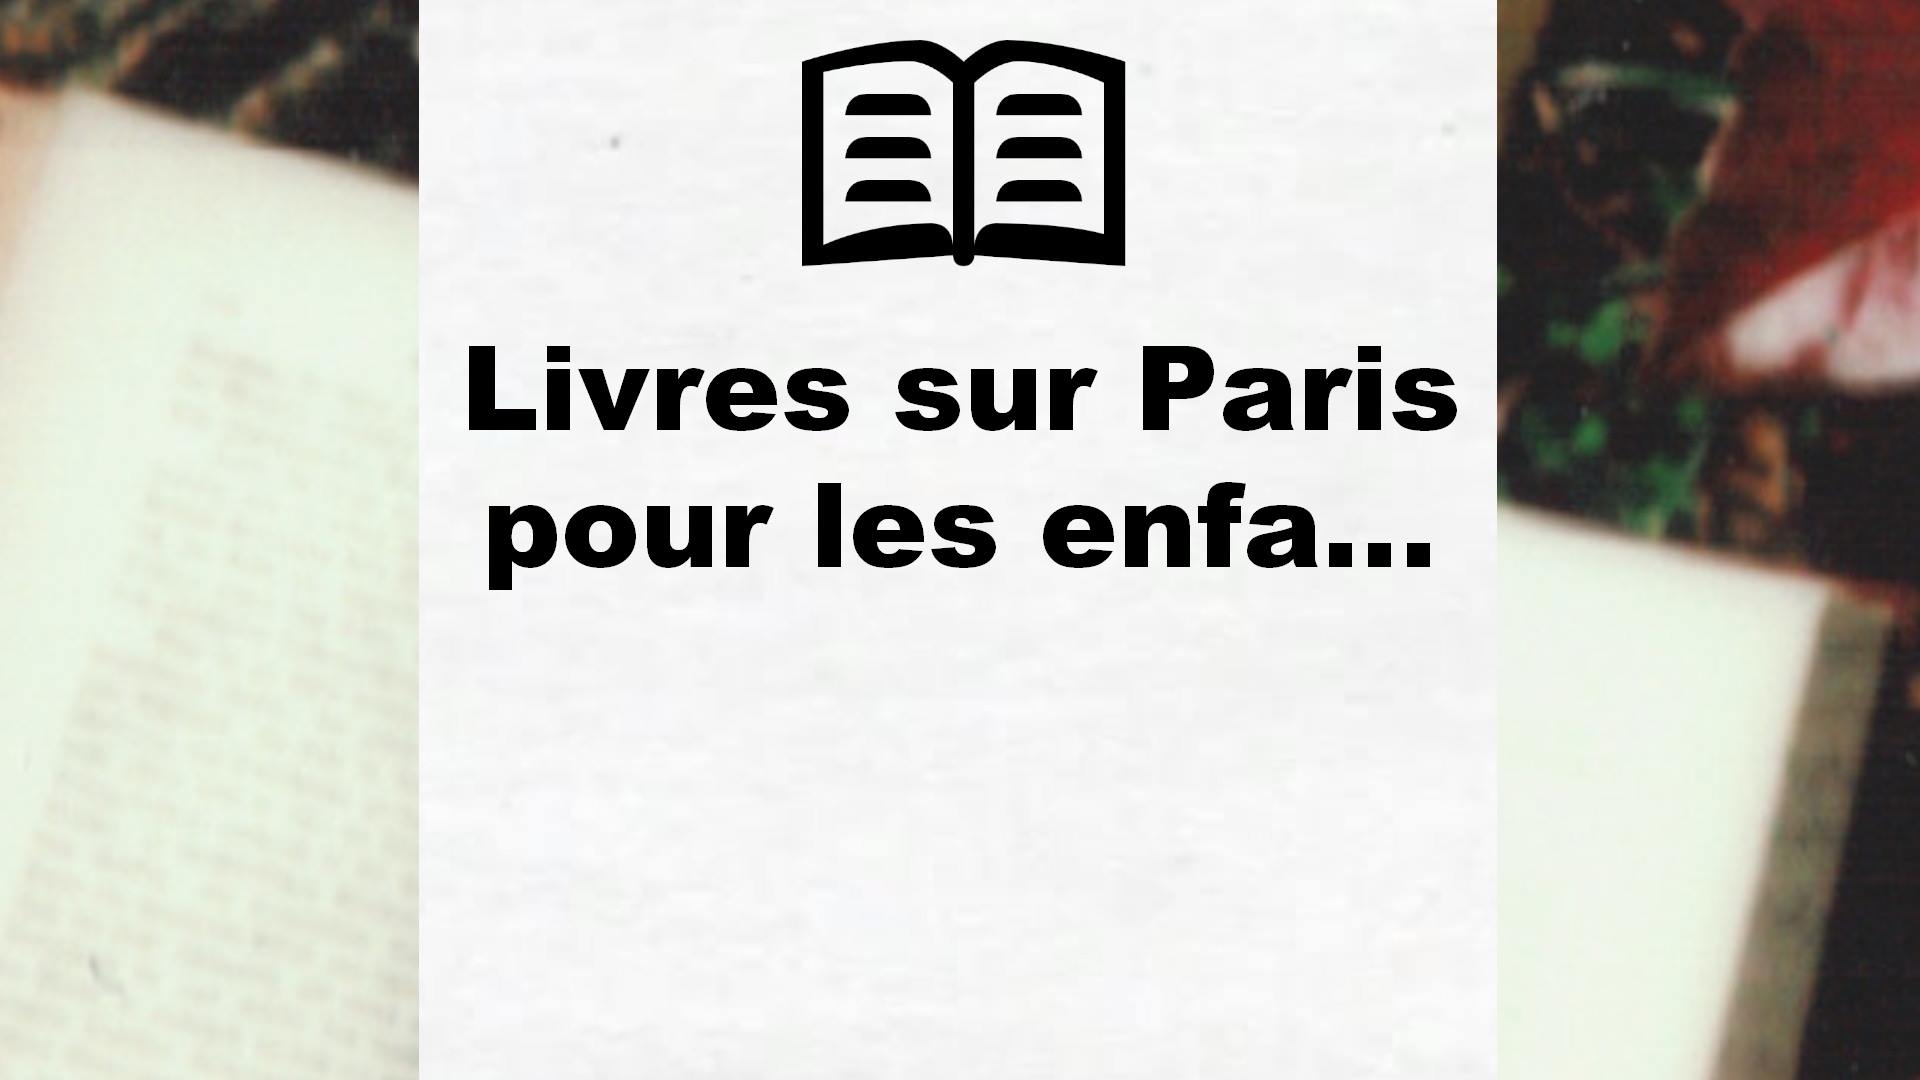 Livres sur Paris pour les enfants